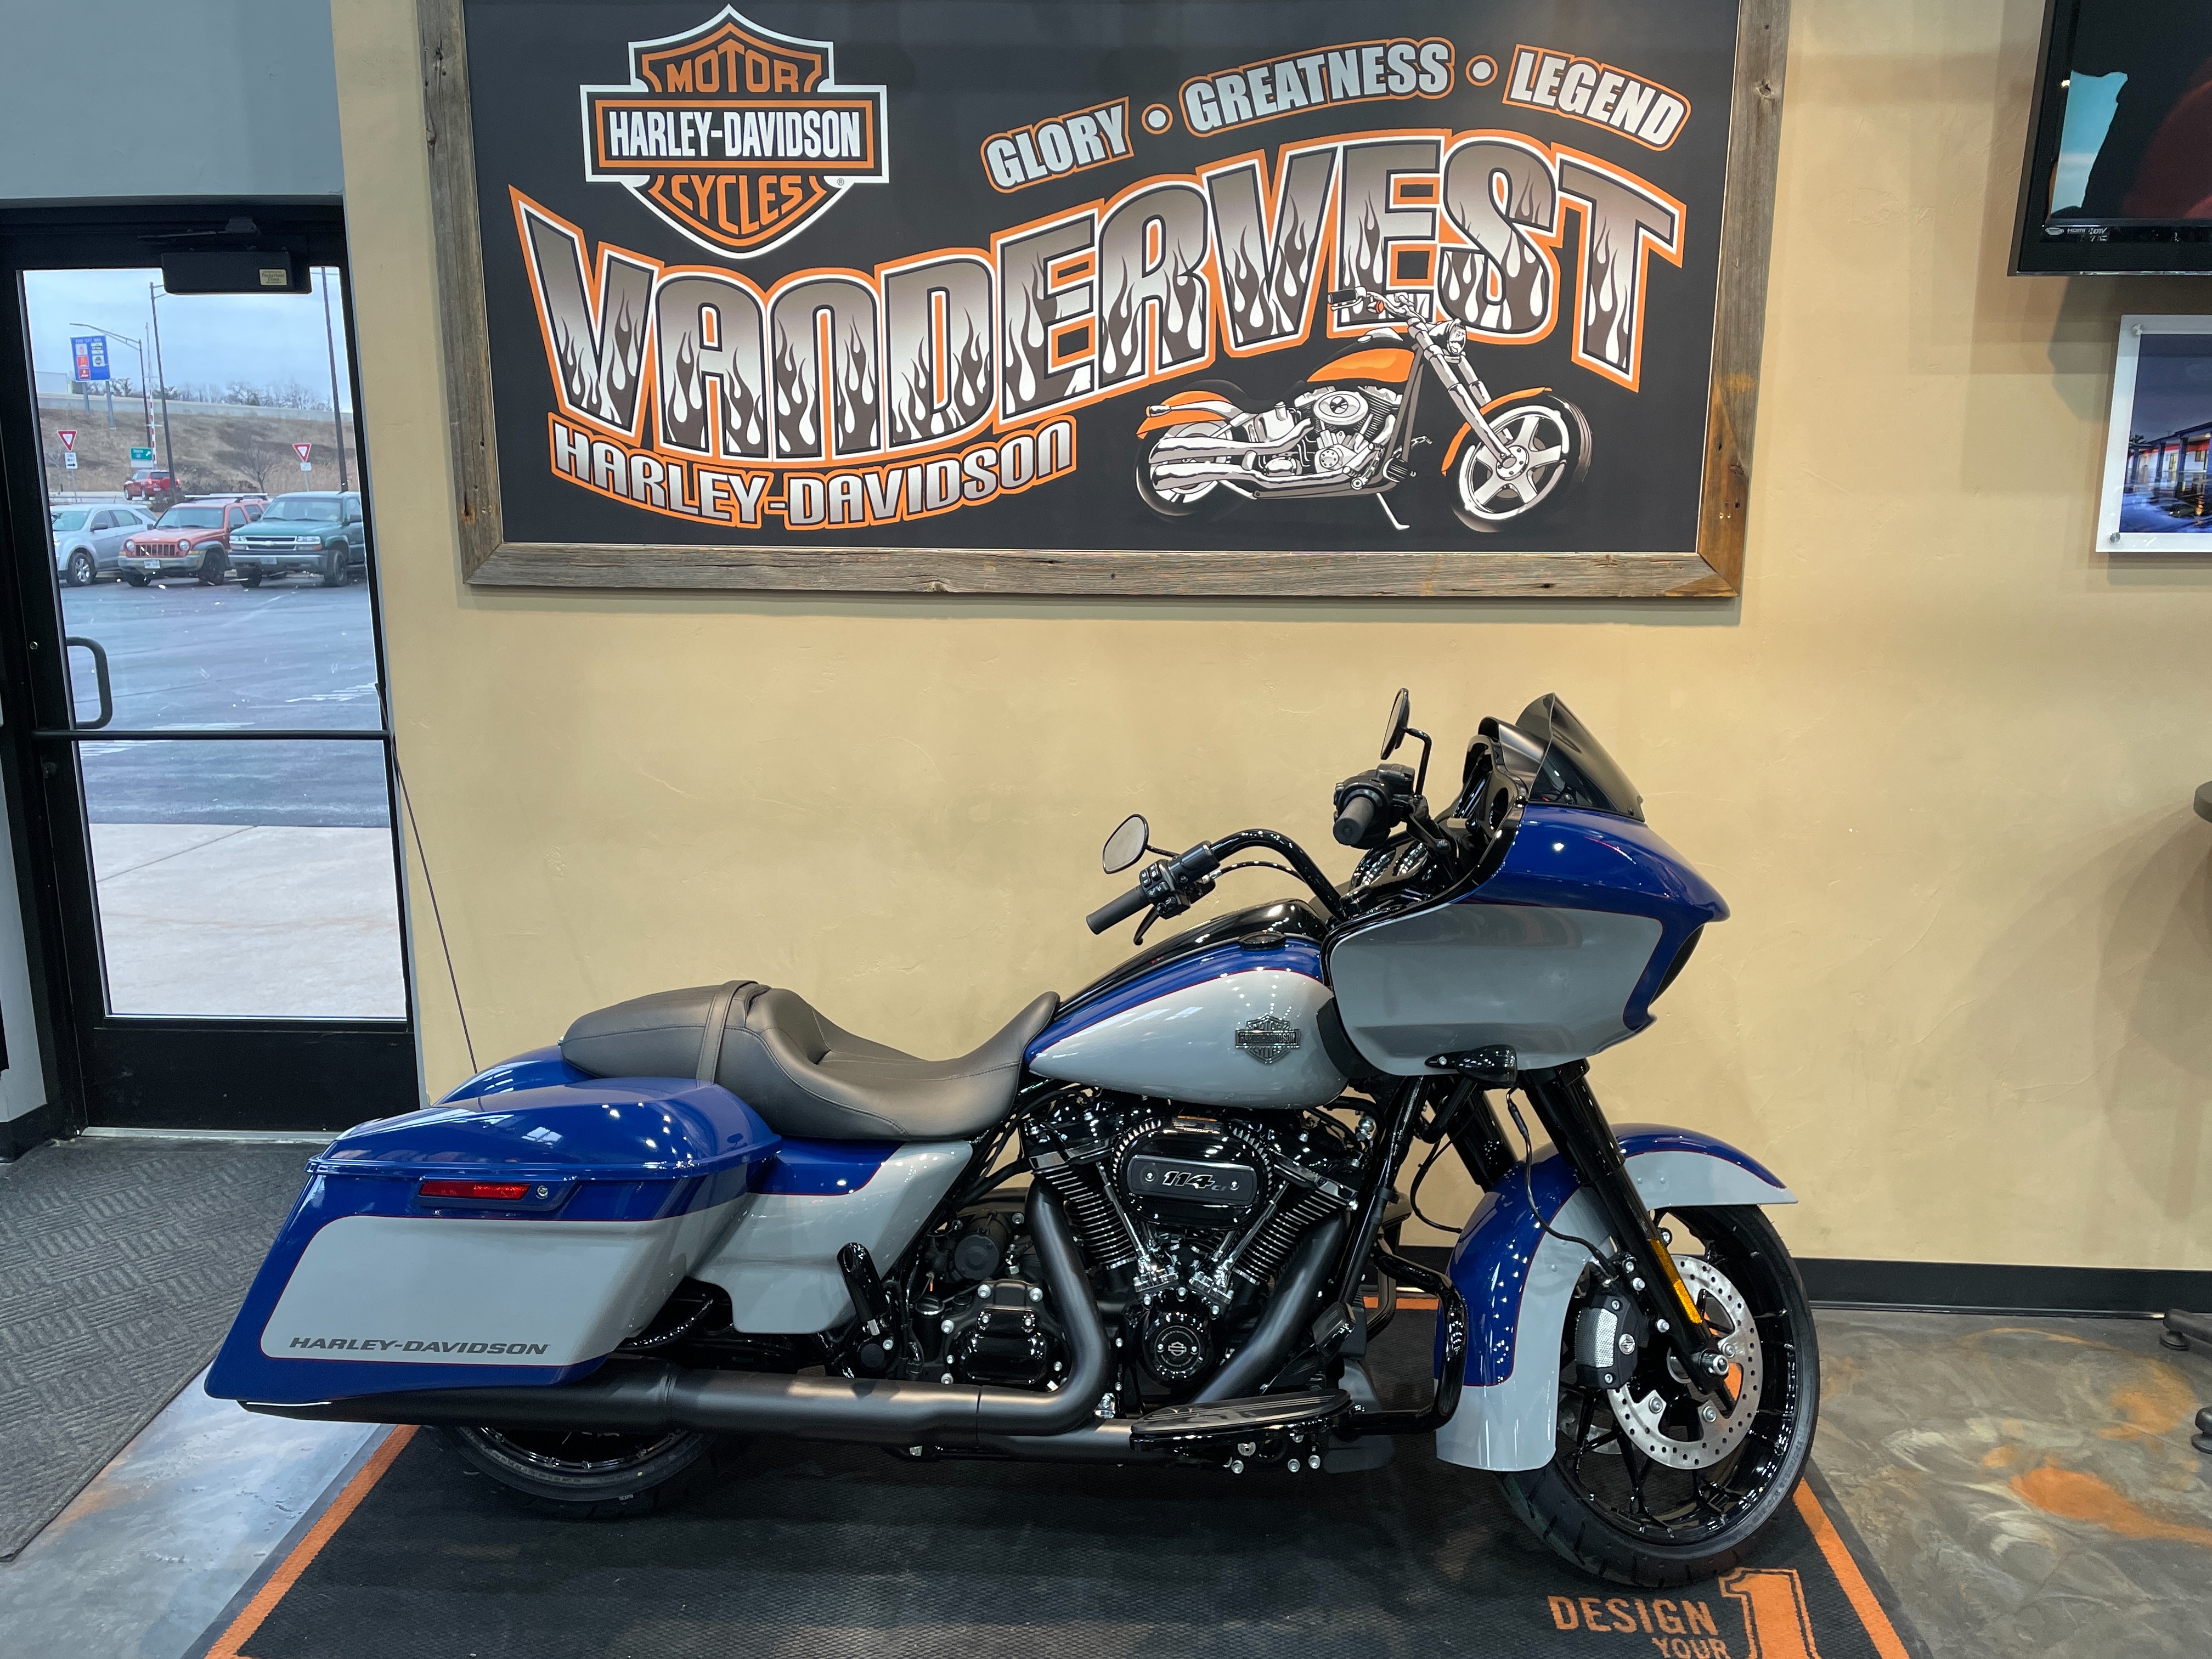 2023 Harley-Davidson Road Glide Special at Vandervest Harley-Davidson, Green Bay, WI 54303